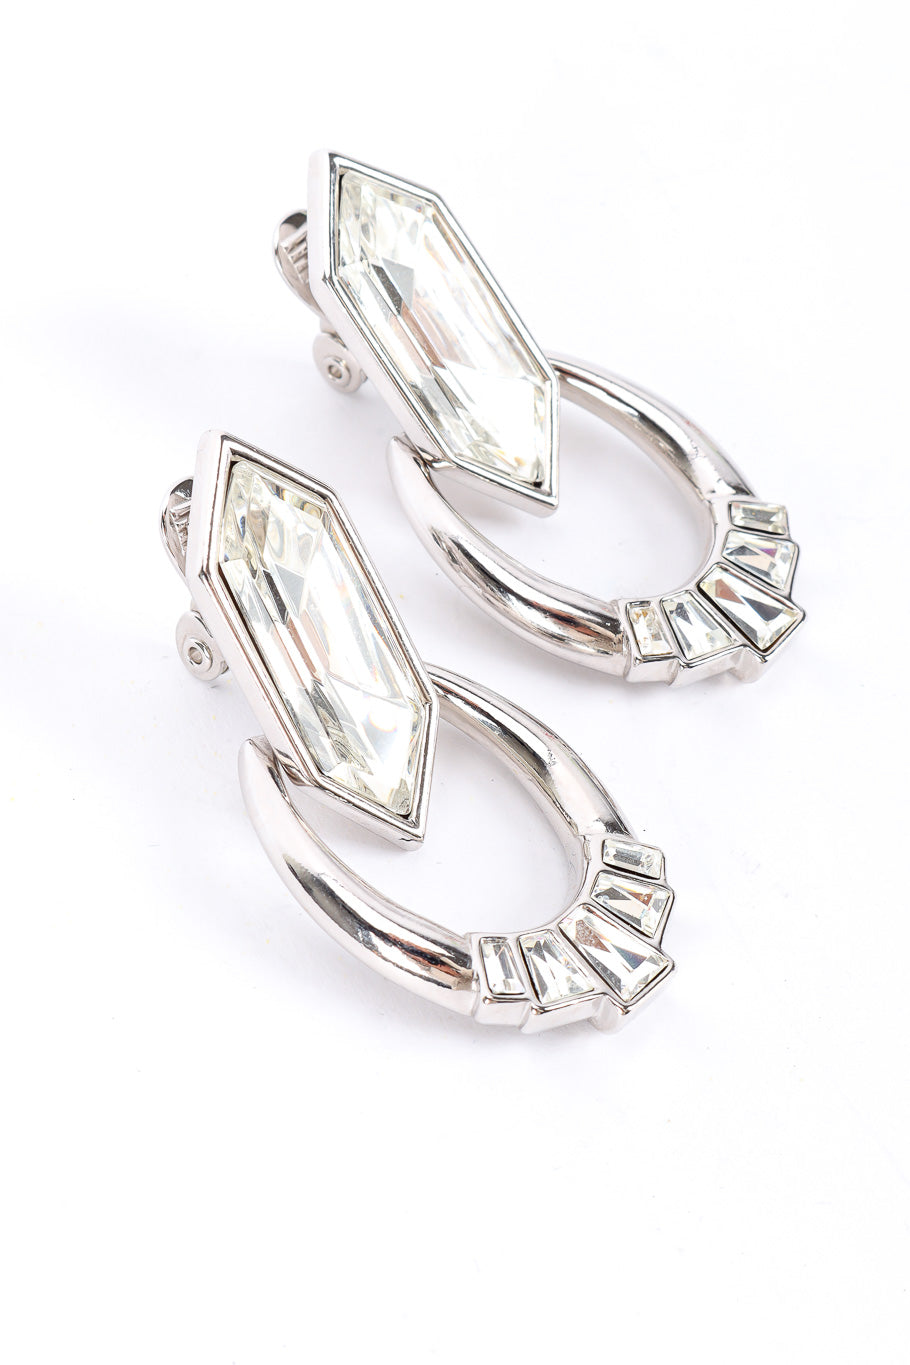 Vintage Yves Saint Laurent Crystal Rhinestone Drop Earrings 3/4 view @Recessla